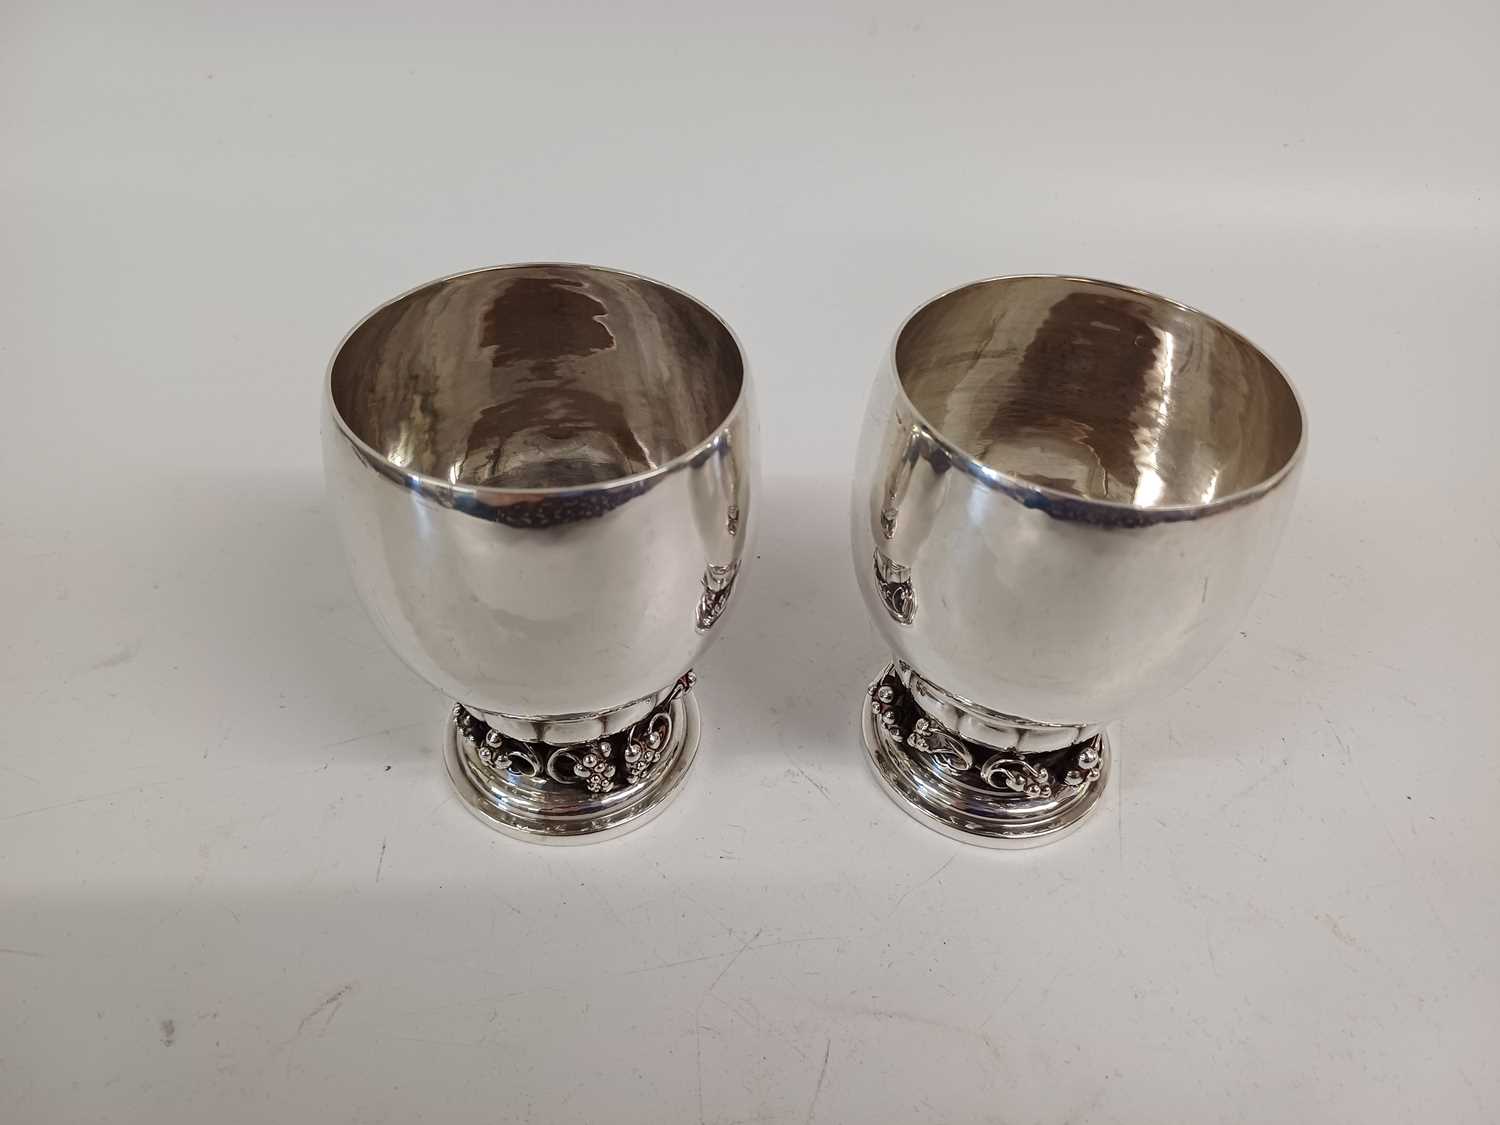 A Pair of Danish Silver Beakers, Designed by Georg Jensen, by Georg Jensen Copenhagen, 1925-1932, W - Image 5 of 5